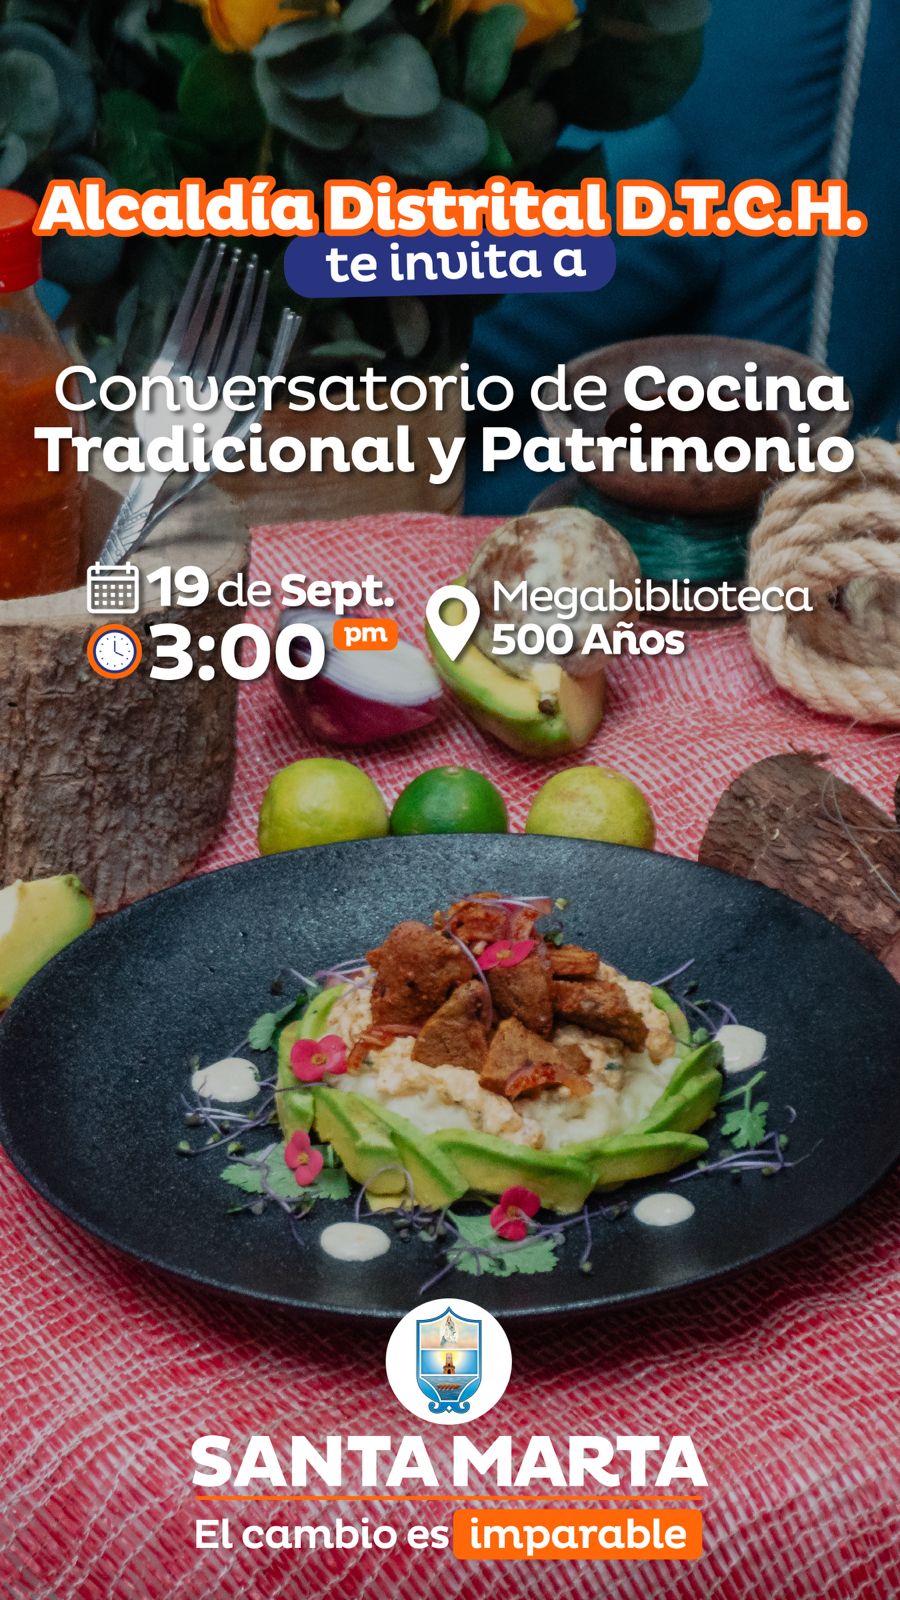 Alcaldía invita a la ciudadanía a participar del conversatorio de Cocina Tradicional y Patrimonio